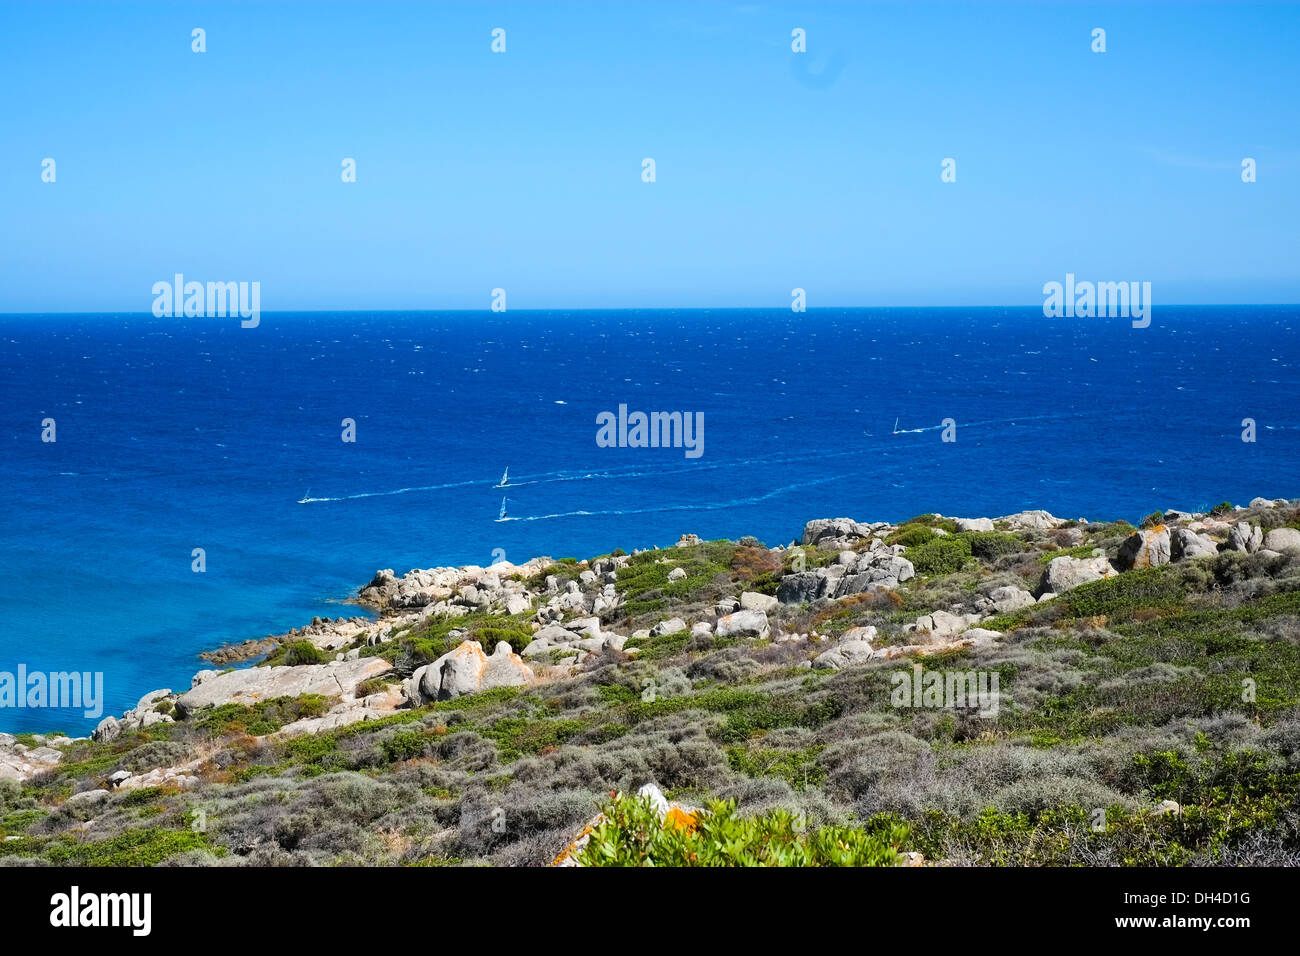 Segelboote Segeln im Blau des Meeres in der Nähe von Chia, Sardinien, Süditalien Stockfoto